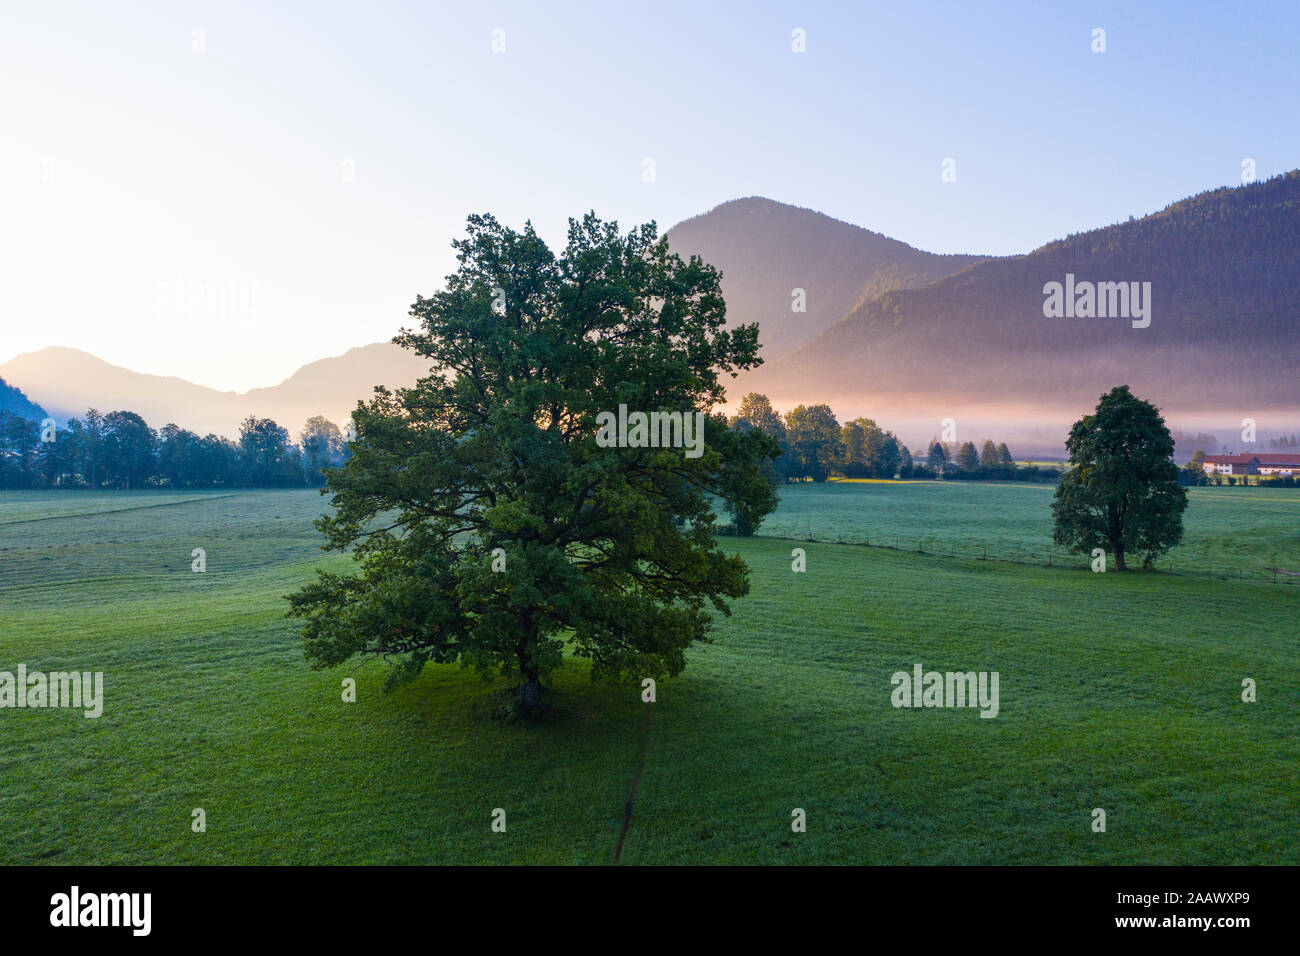 Germany, Bavaria, Upper Bavaria, Isarwinkel, Jachenau, oak at sunrise Stock Photo